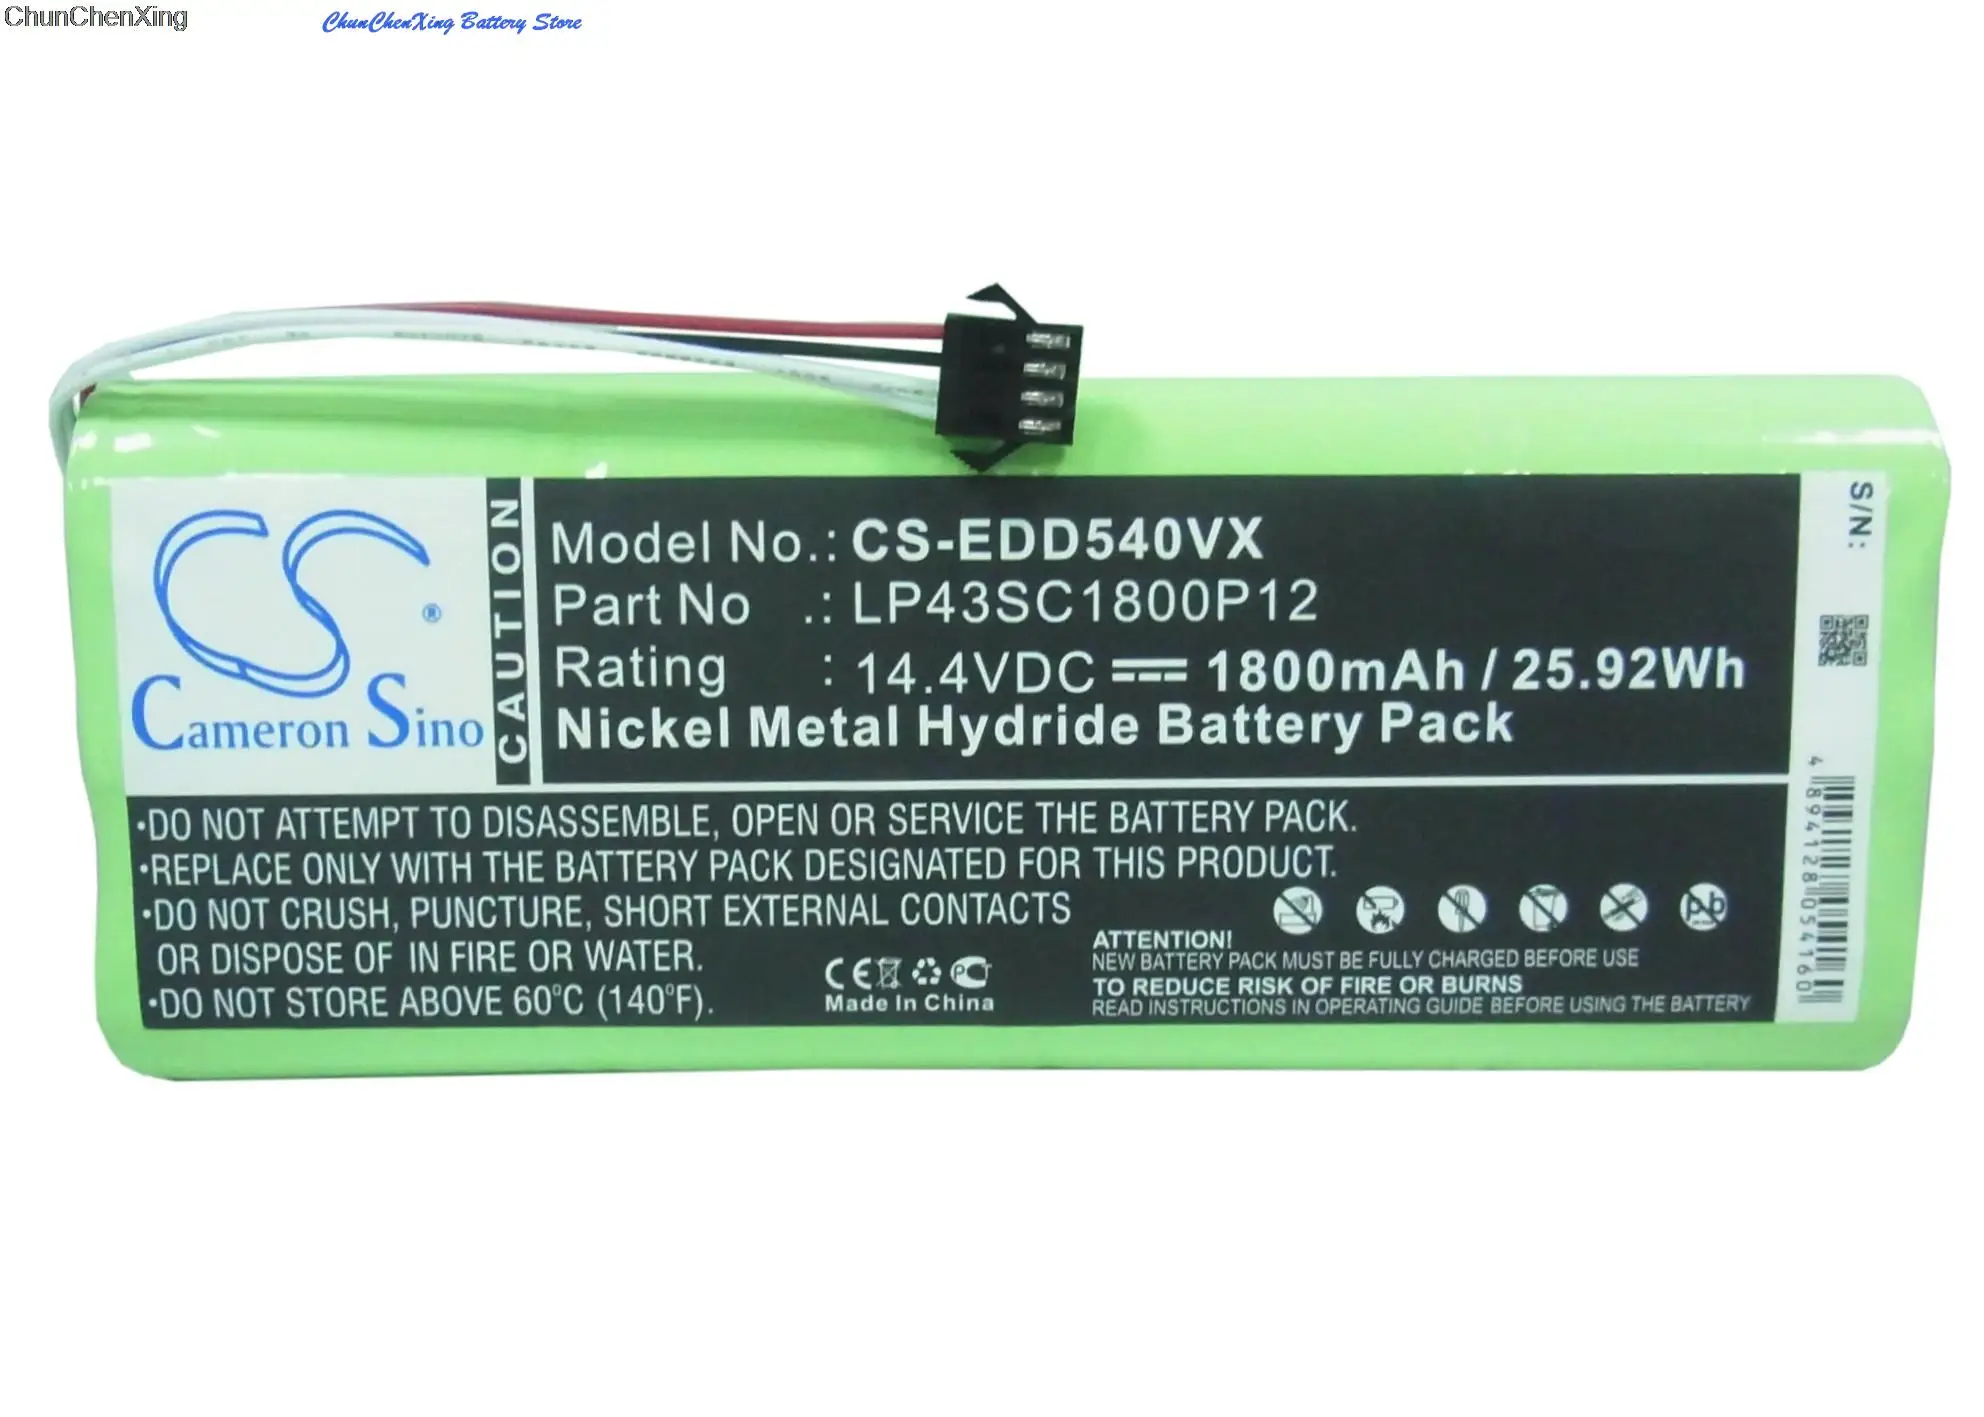 

Cameron Sino 1800mAh Battery LP43SC1800P12 for Ecovacs Deebot D523, D540, D550, D560, D570, D580